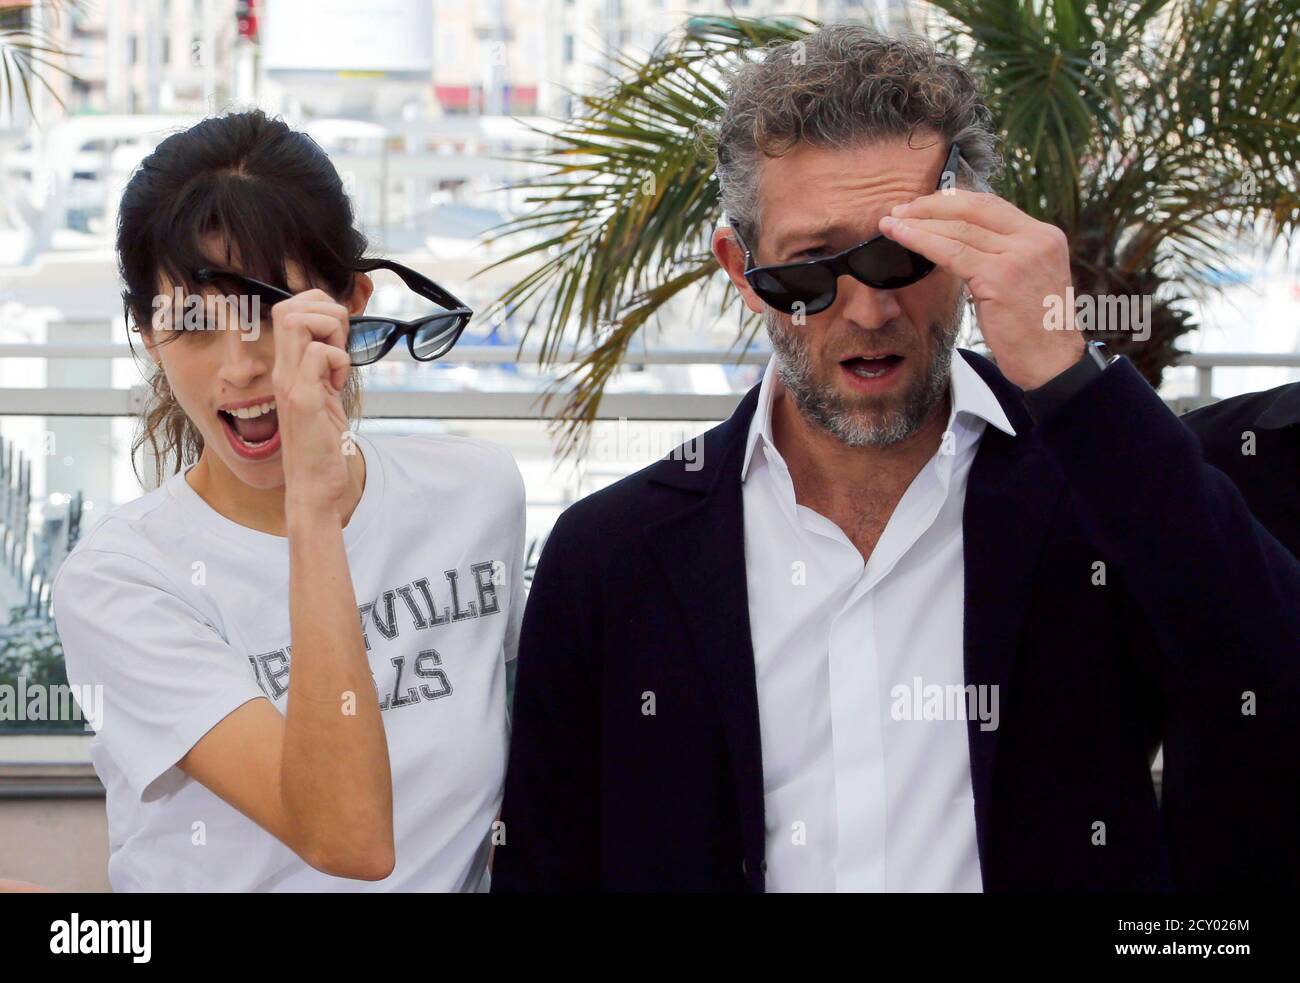 Le réalisateur Maiwenn (L) et l'acteur Vincent Cassel retirent leurs lunettes  de soleil lors d'une séance photo pour le film « mon roi » en compétition au  68e Festival de Cannes, dans